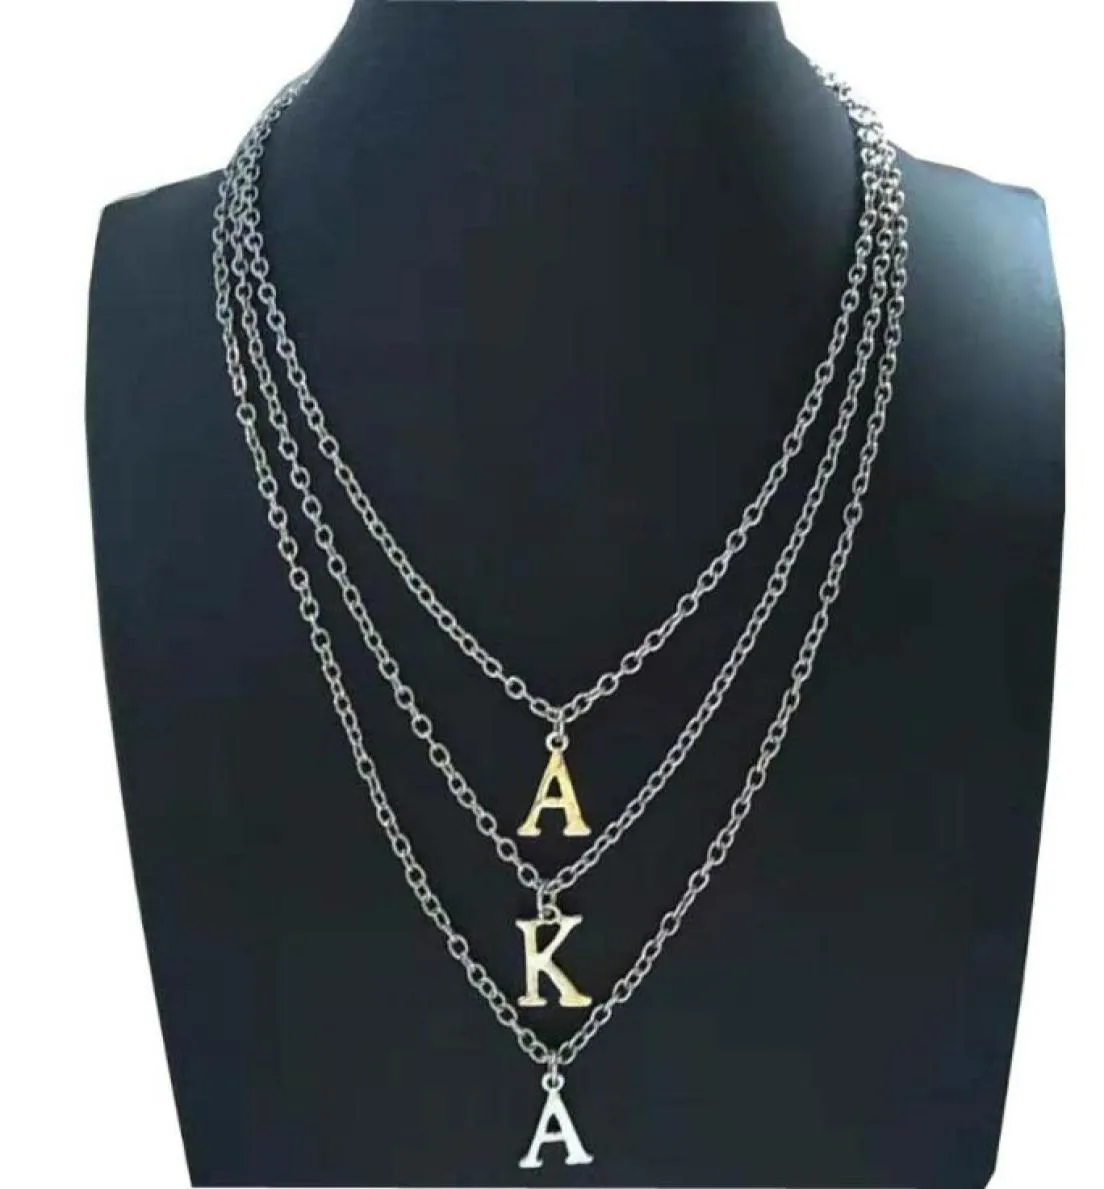 Sororidad griega de Beyou, también conocida como letras, cadena de múltiples capas, collar personalizado 6286527